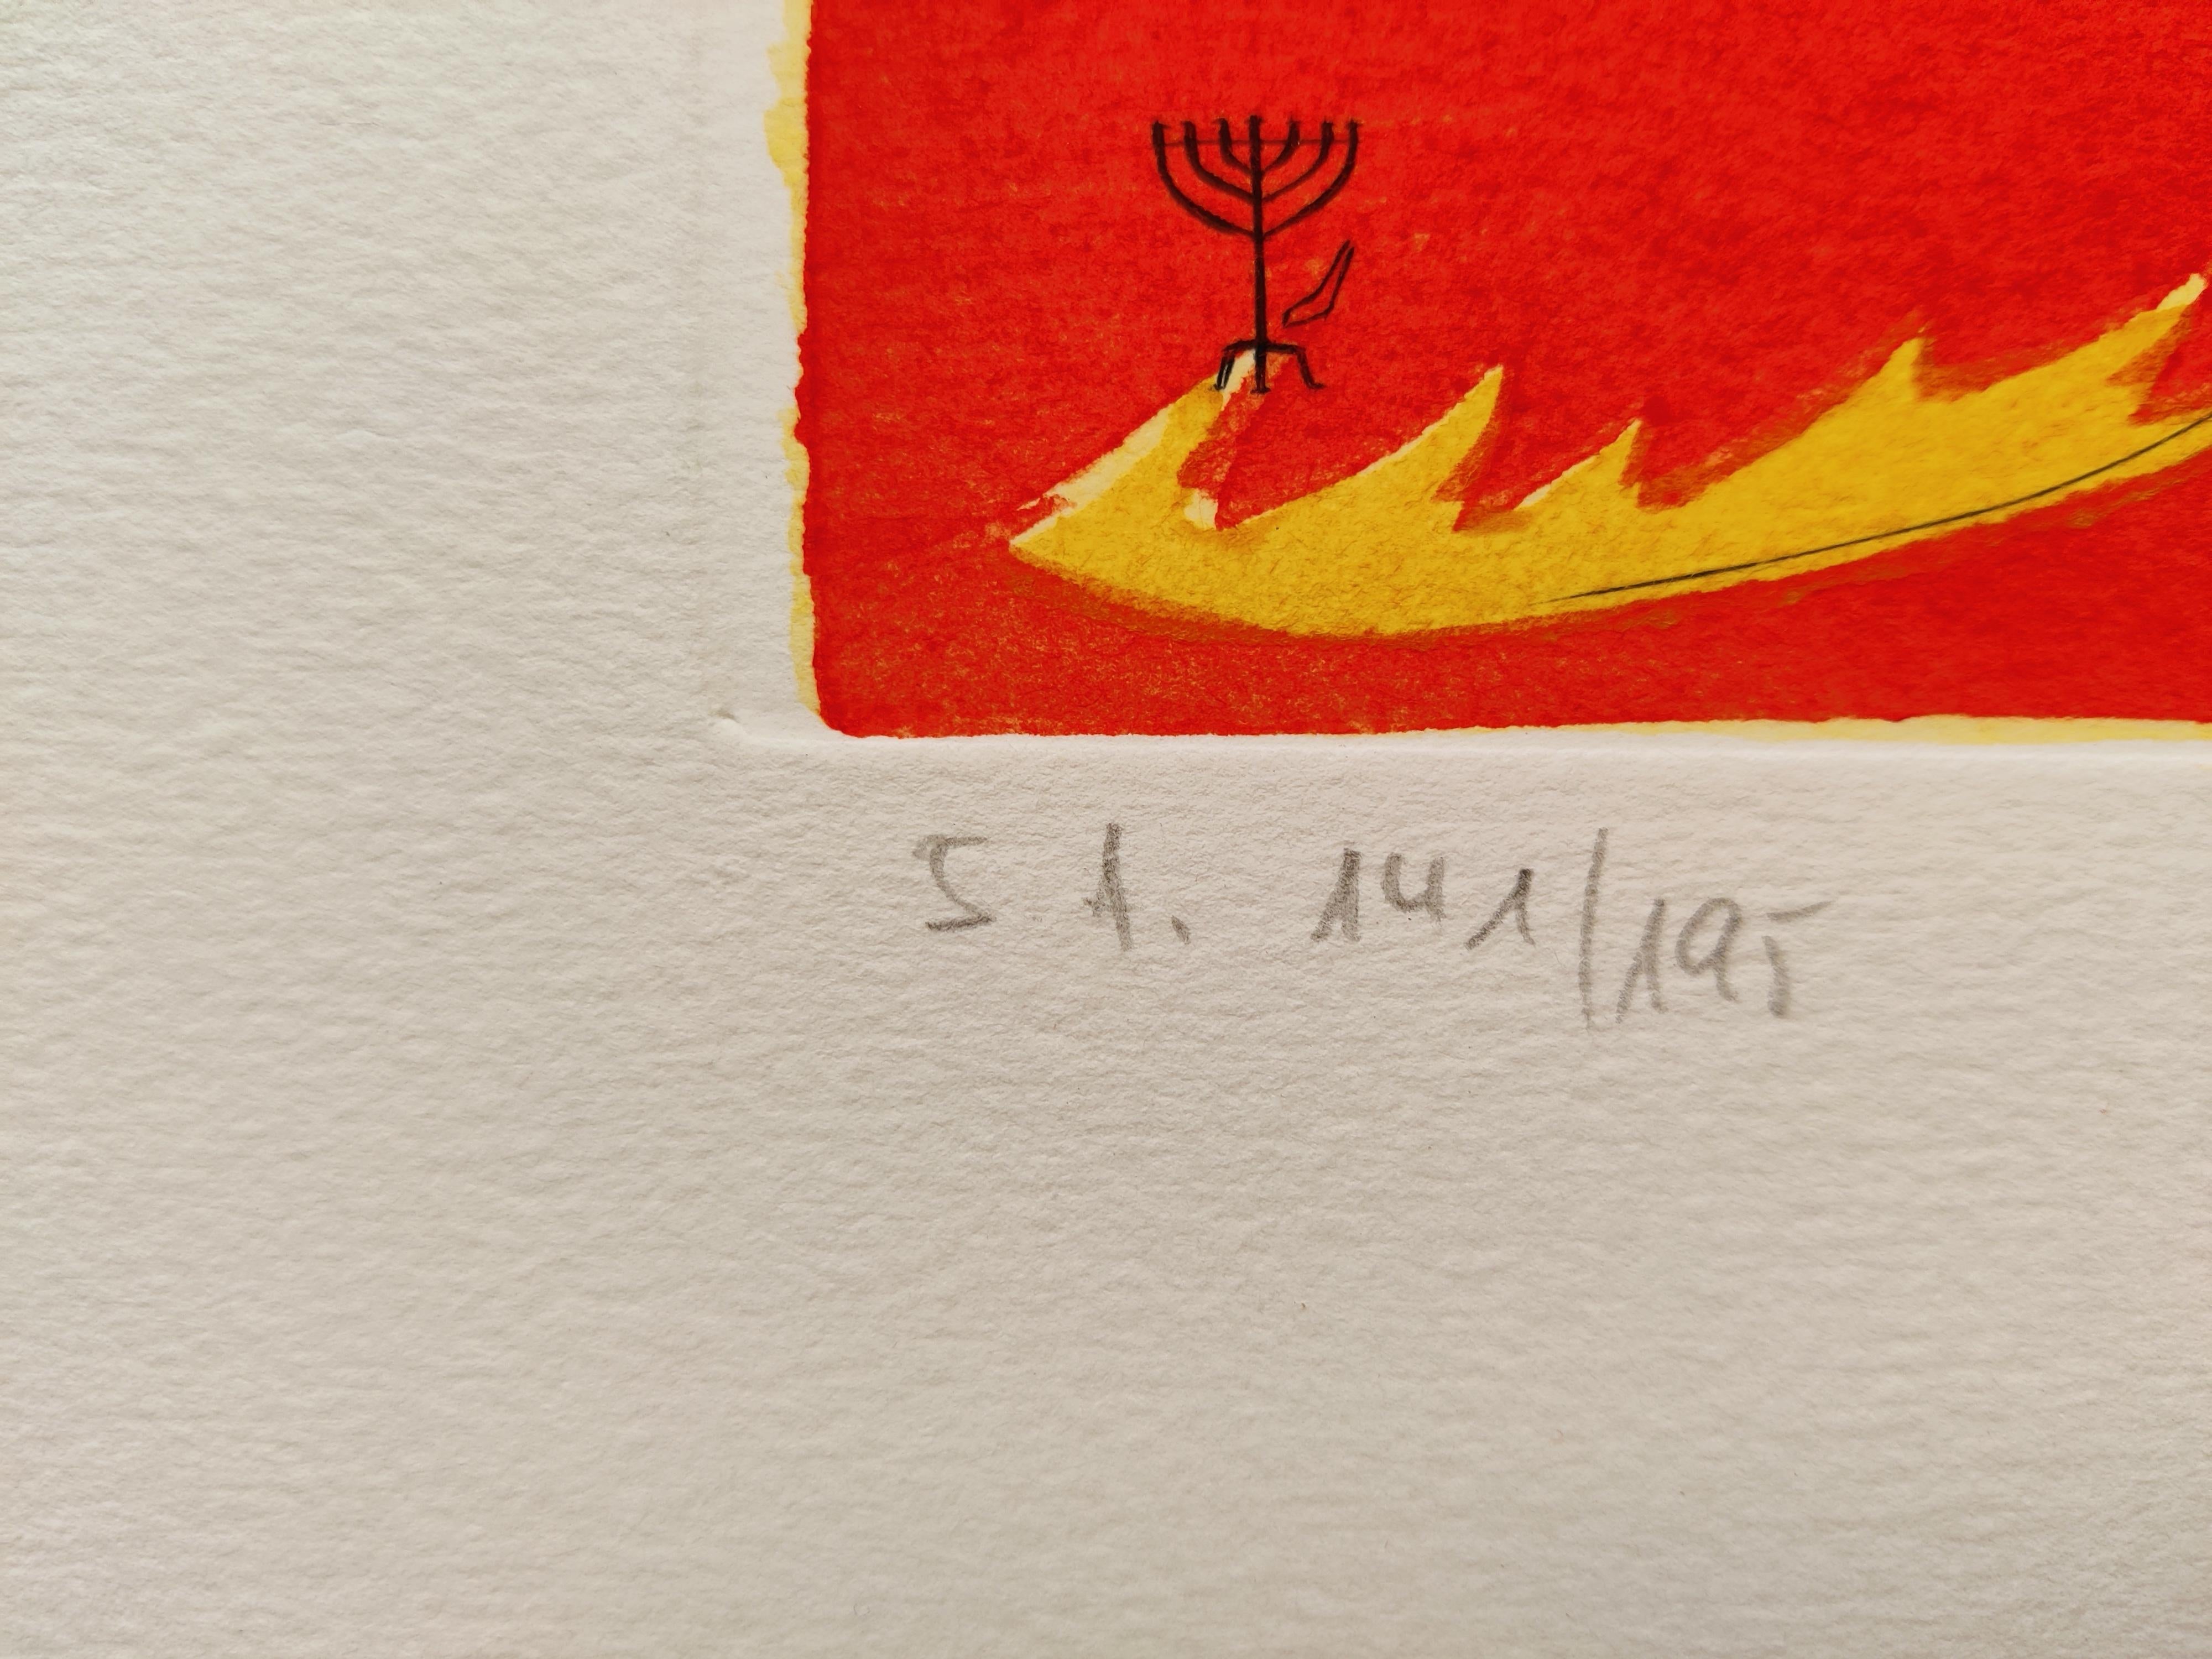 Salvador Dali (1904-1989)
Levi, tiré des Douze tribus d'Israël, 1973
Gravure en couleurs sur papier Rives BFK
Taille de la feuille : 65 x 50 cm
Ed. SA 141/195
Signée et numérotée au crayon le long du bord inférieur.

LITERATURE :
Champ, 72-6H